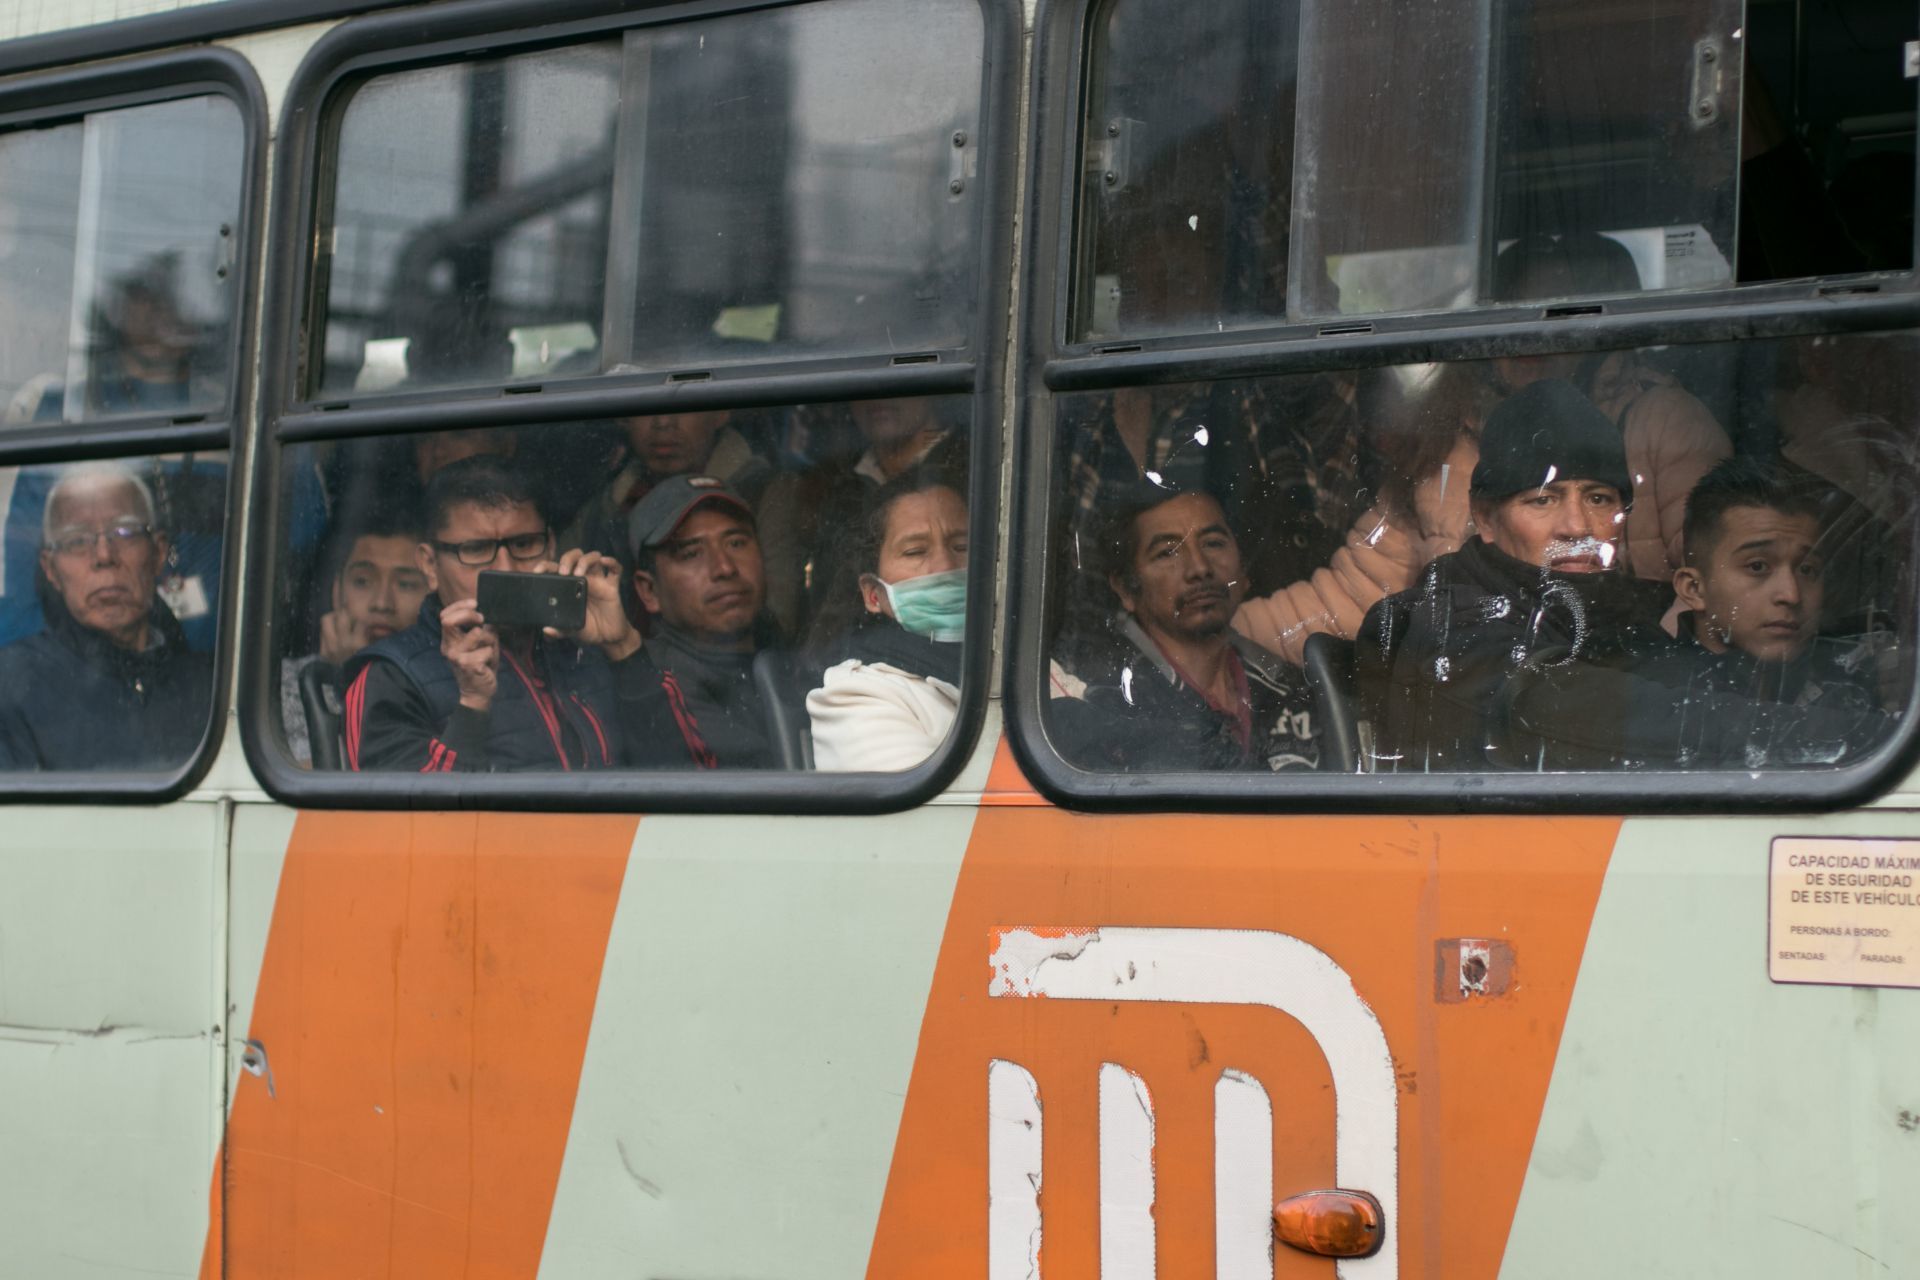 Metro reanudaría servicio completo en Línea 1 el martes tras choque de trenes en Tacubaya